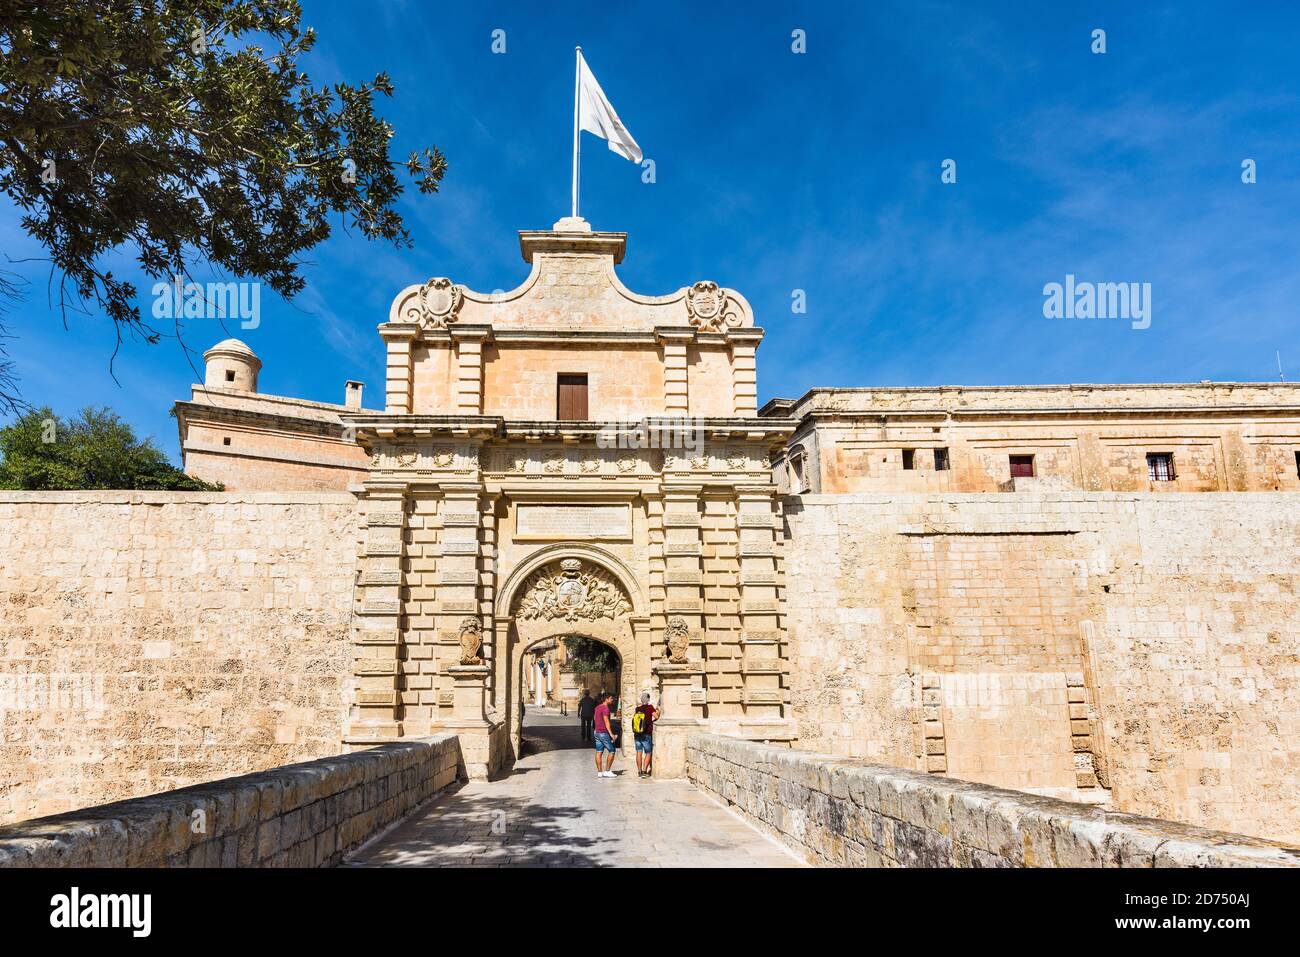 Porta Mdina l'ingresso principale della città fortificata maltese. Conosciuta anche come porta di Vilhena. L'architettura e' in stile barocco. Foto Stock